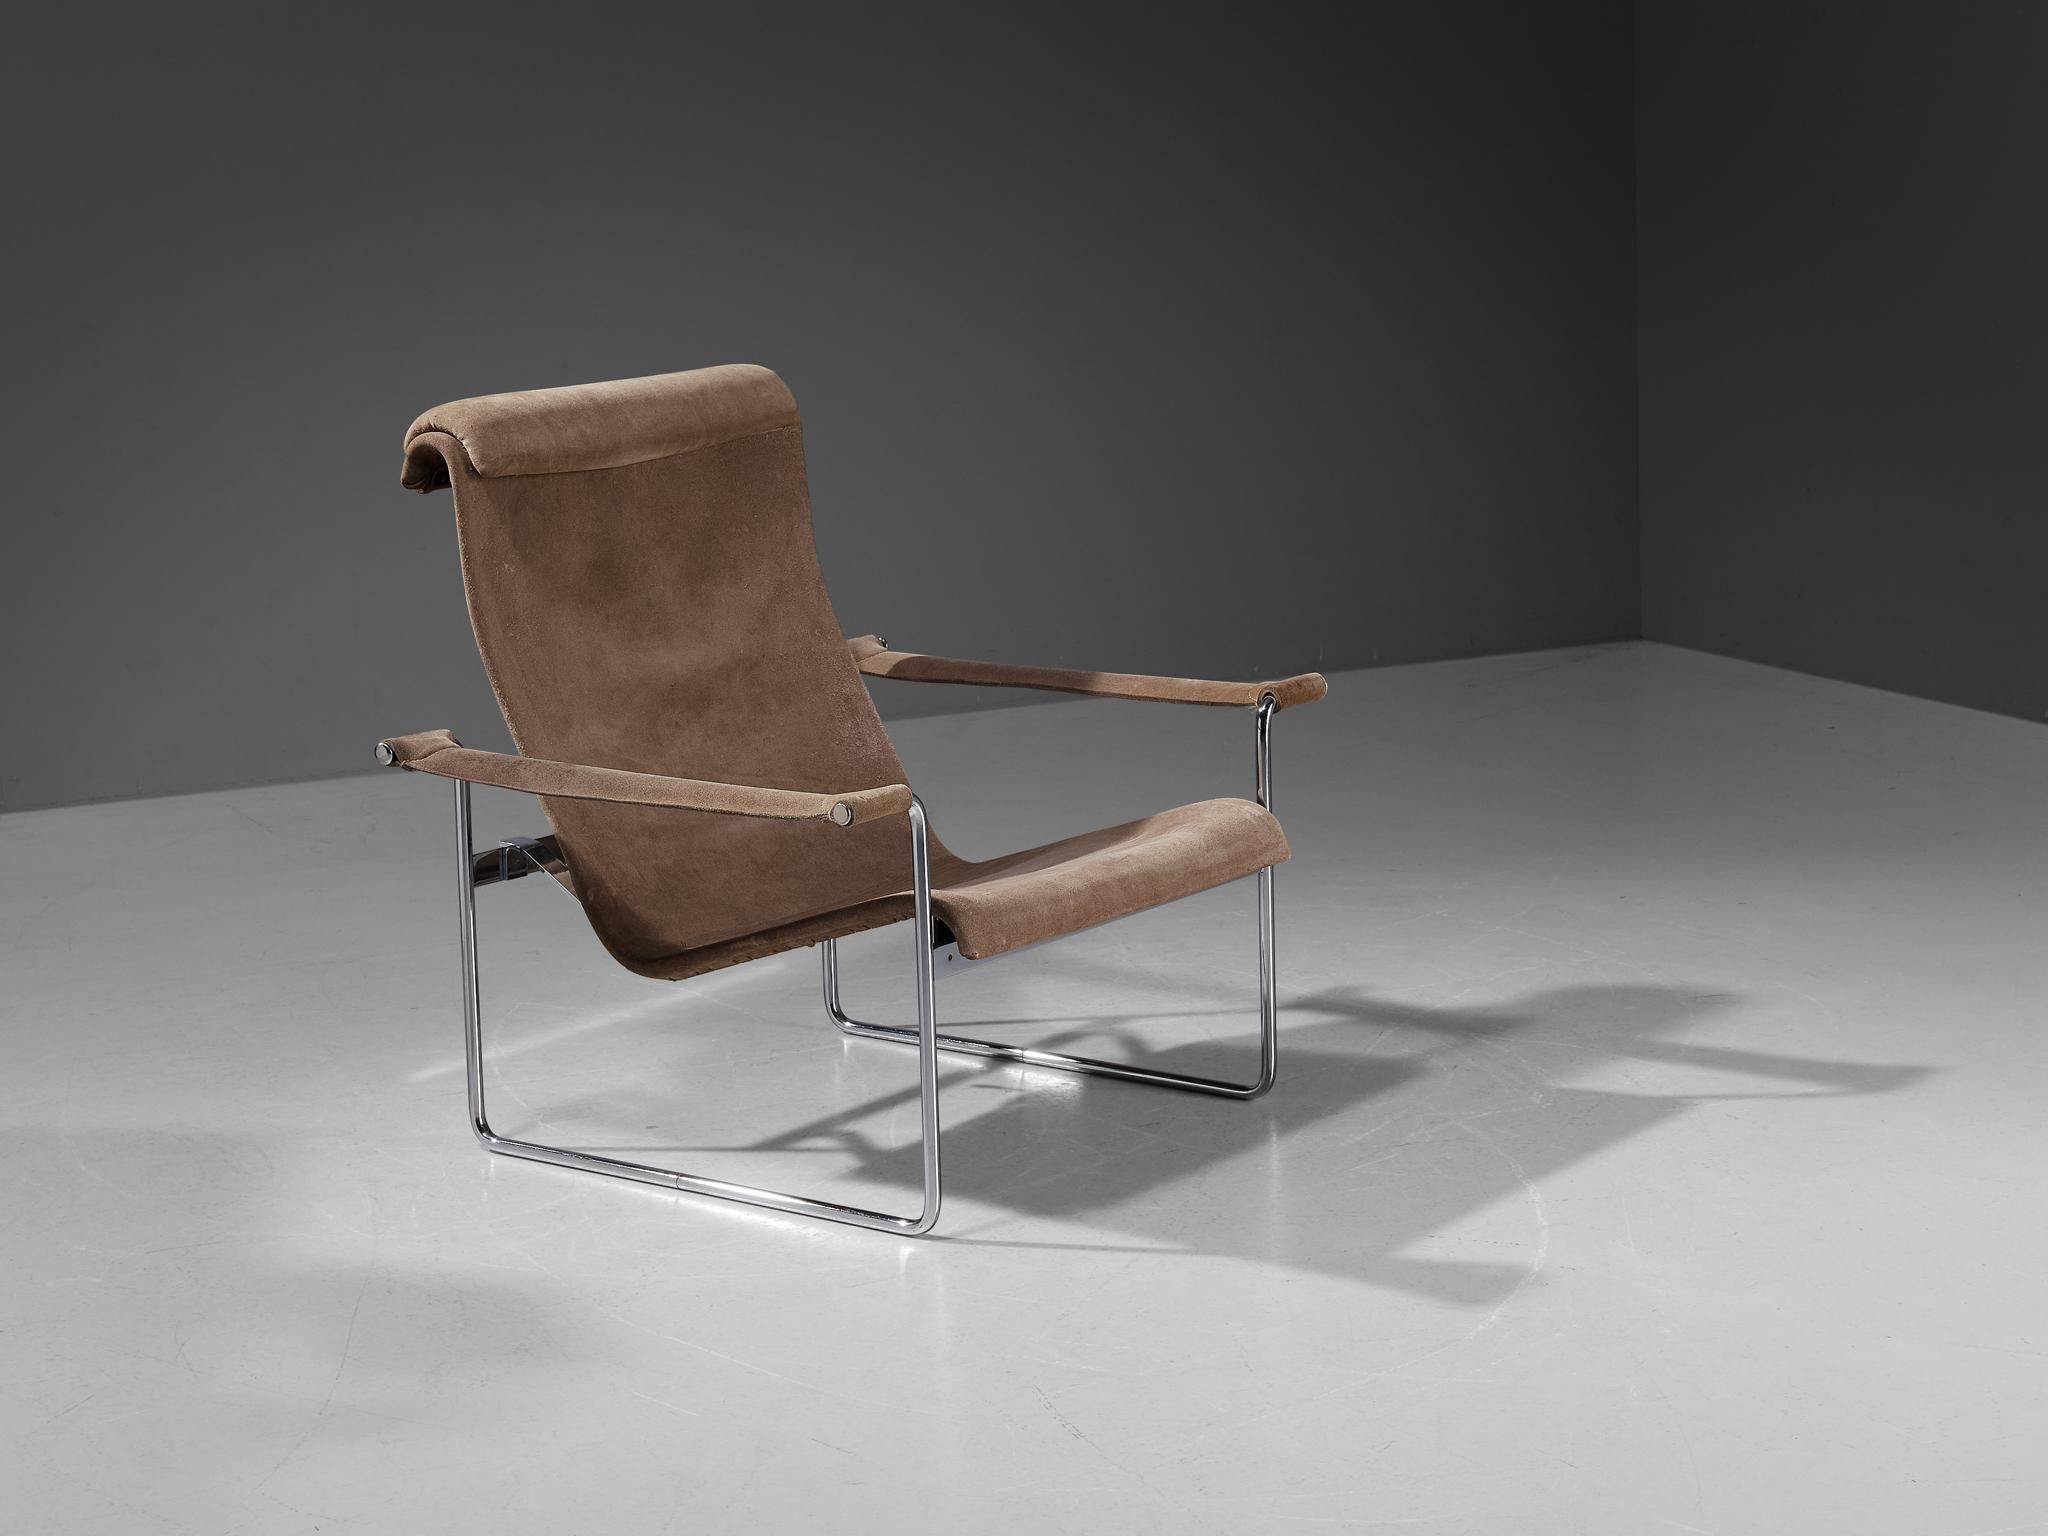 Hans Könecke für Tecta, Sessel, Wildleder und Metall, Deutschland, 1960er Jahre

Dieser Loungesessel ist ein weiteres großartiges Beispiel für ein Möbel der deutschen Moderne, das der Architekt Hans Könecke in den 1960er Jahren entworfen hat. Dieses